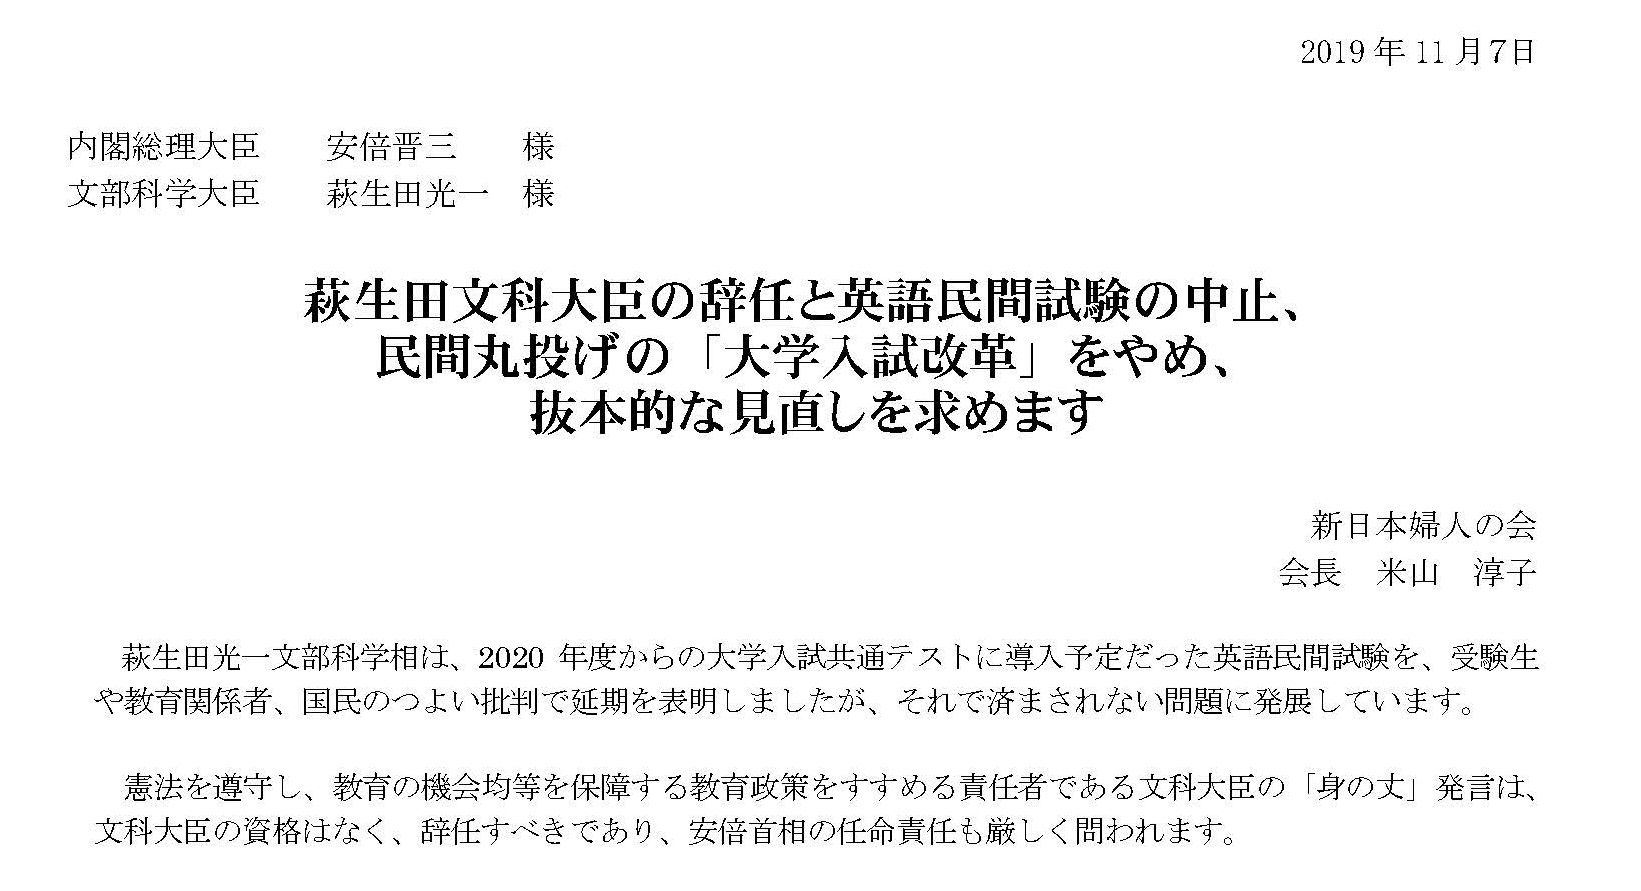 要請 萩生田文科大臣の辞任と英語民間試験の中止 民間丸投げの 大学入試改革 をやめ 抜本的な見直しを求めます 新日本婦人の会中央本部